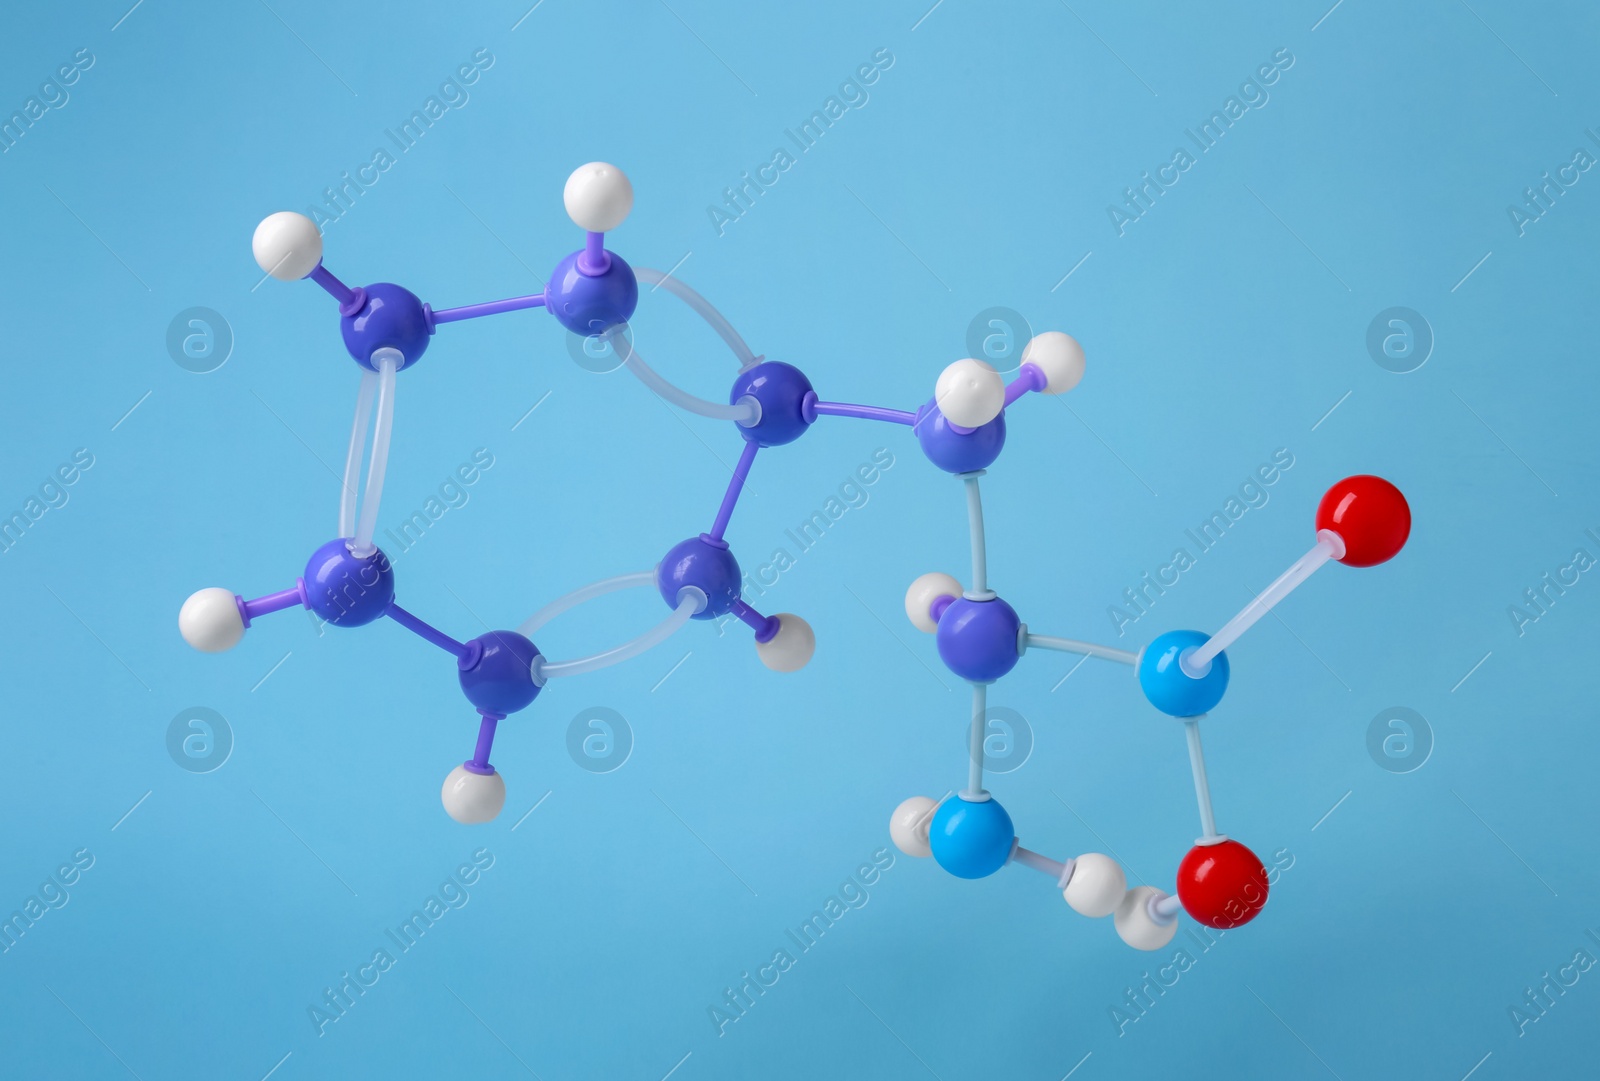 Photo of Molecule of phenylalanine on light blue background. Chemical model